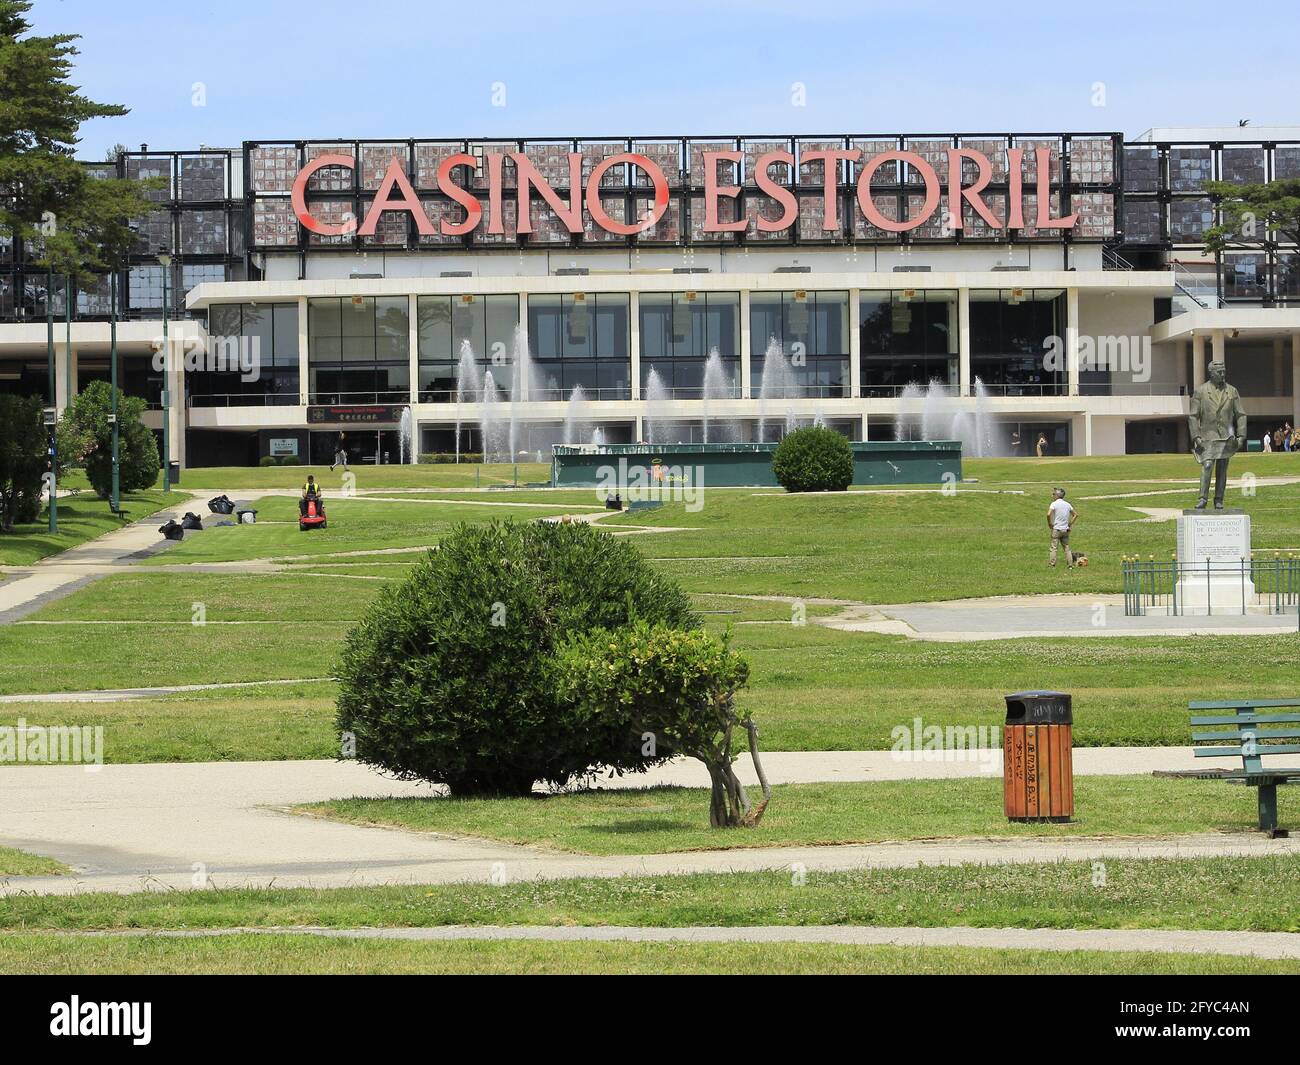 O portal diz sobre casinos- informações populares